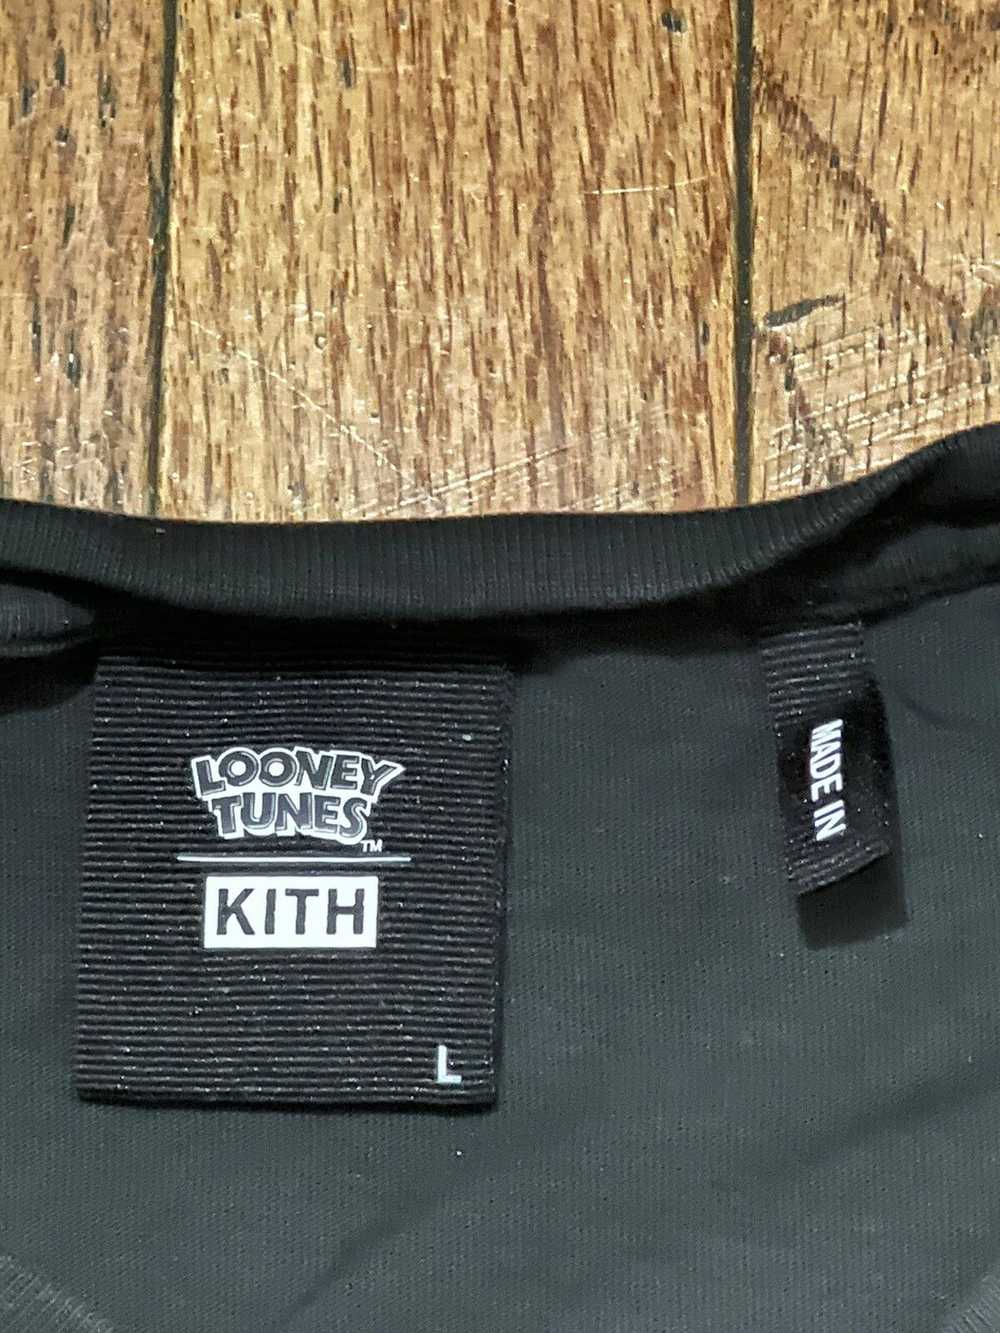 Kith Kith x Looney Tunes T-Shirt size large - image 4